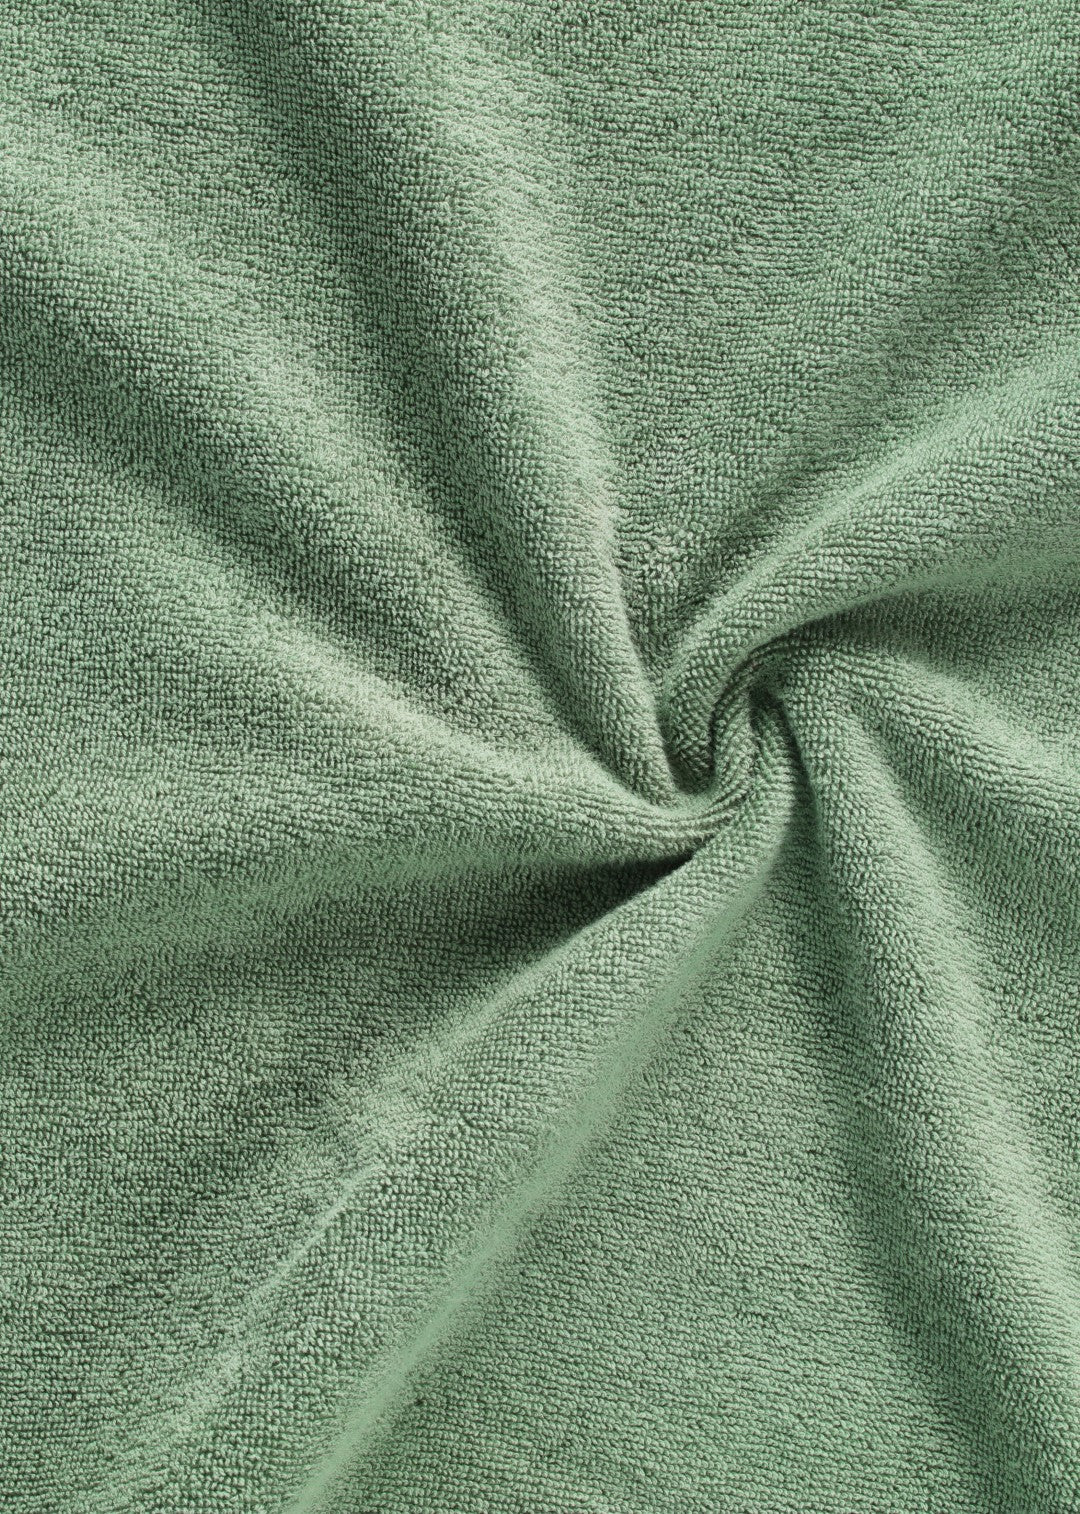 Handtuch Baumwolle Dunkelgrün 70 x 130 cm